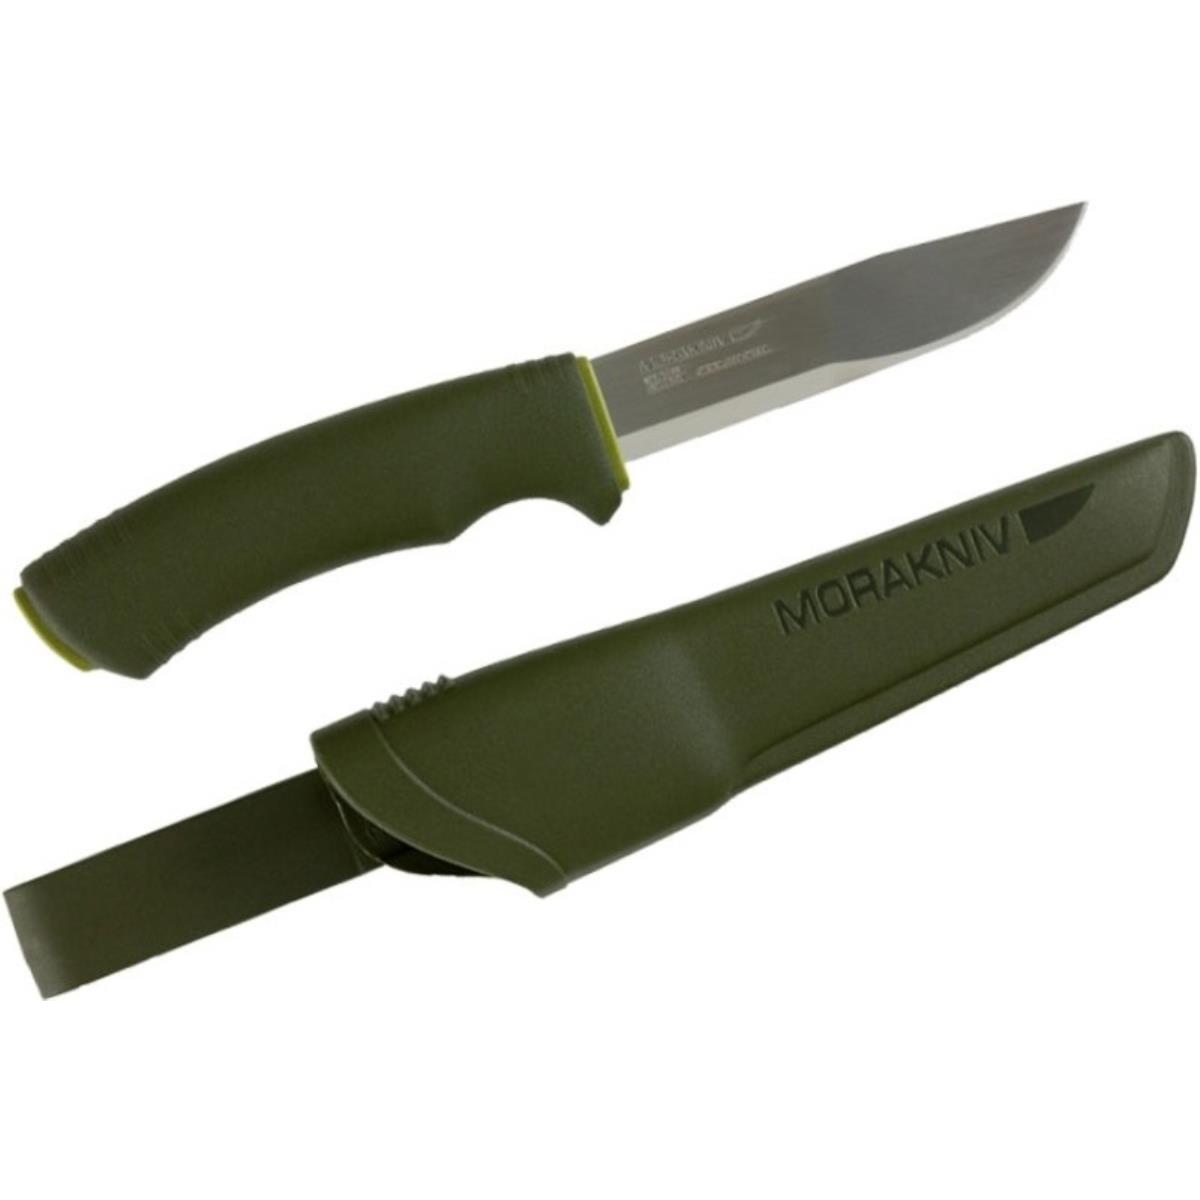 Нож Bushcraft Forest (12356) Morakniv нож с фиксированным лезвием morakniv bushcraft forest сталь sandvik 12c27 ручка резина пластик